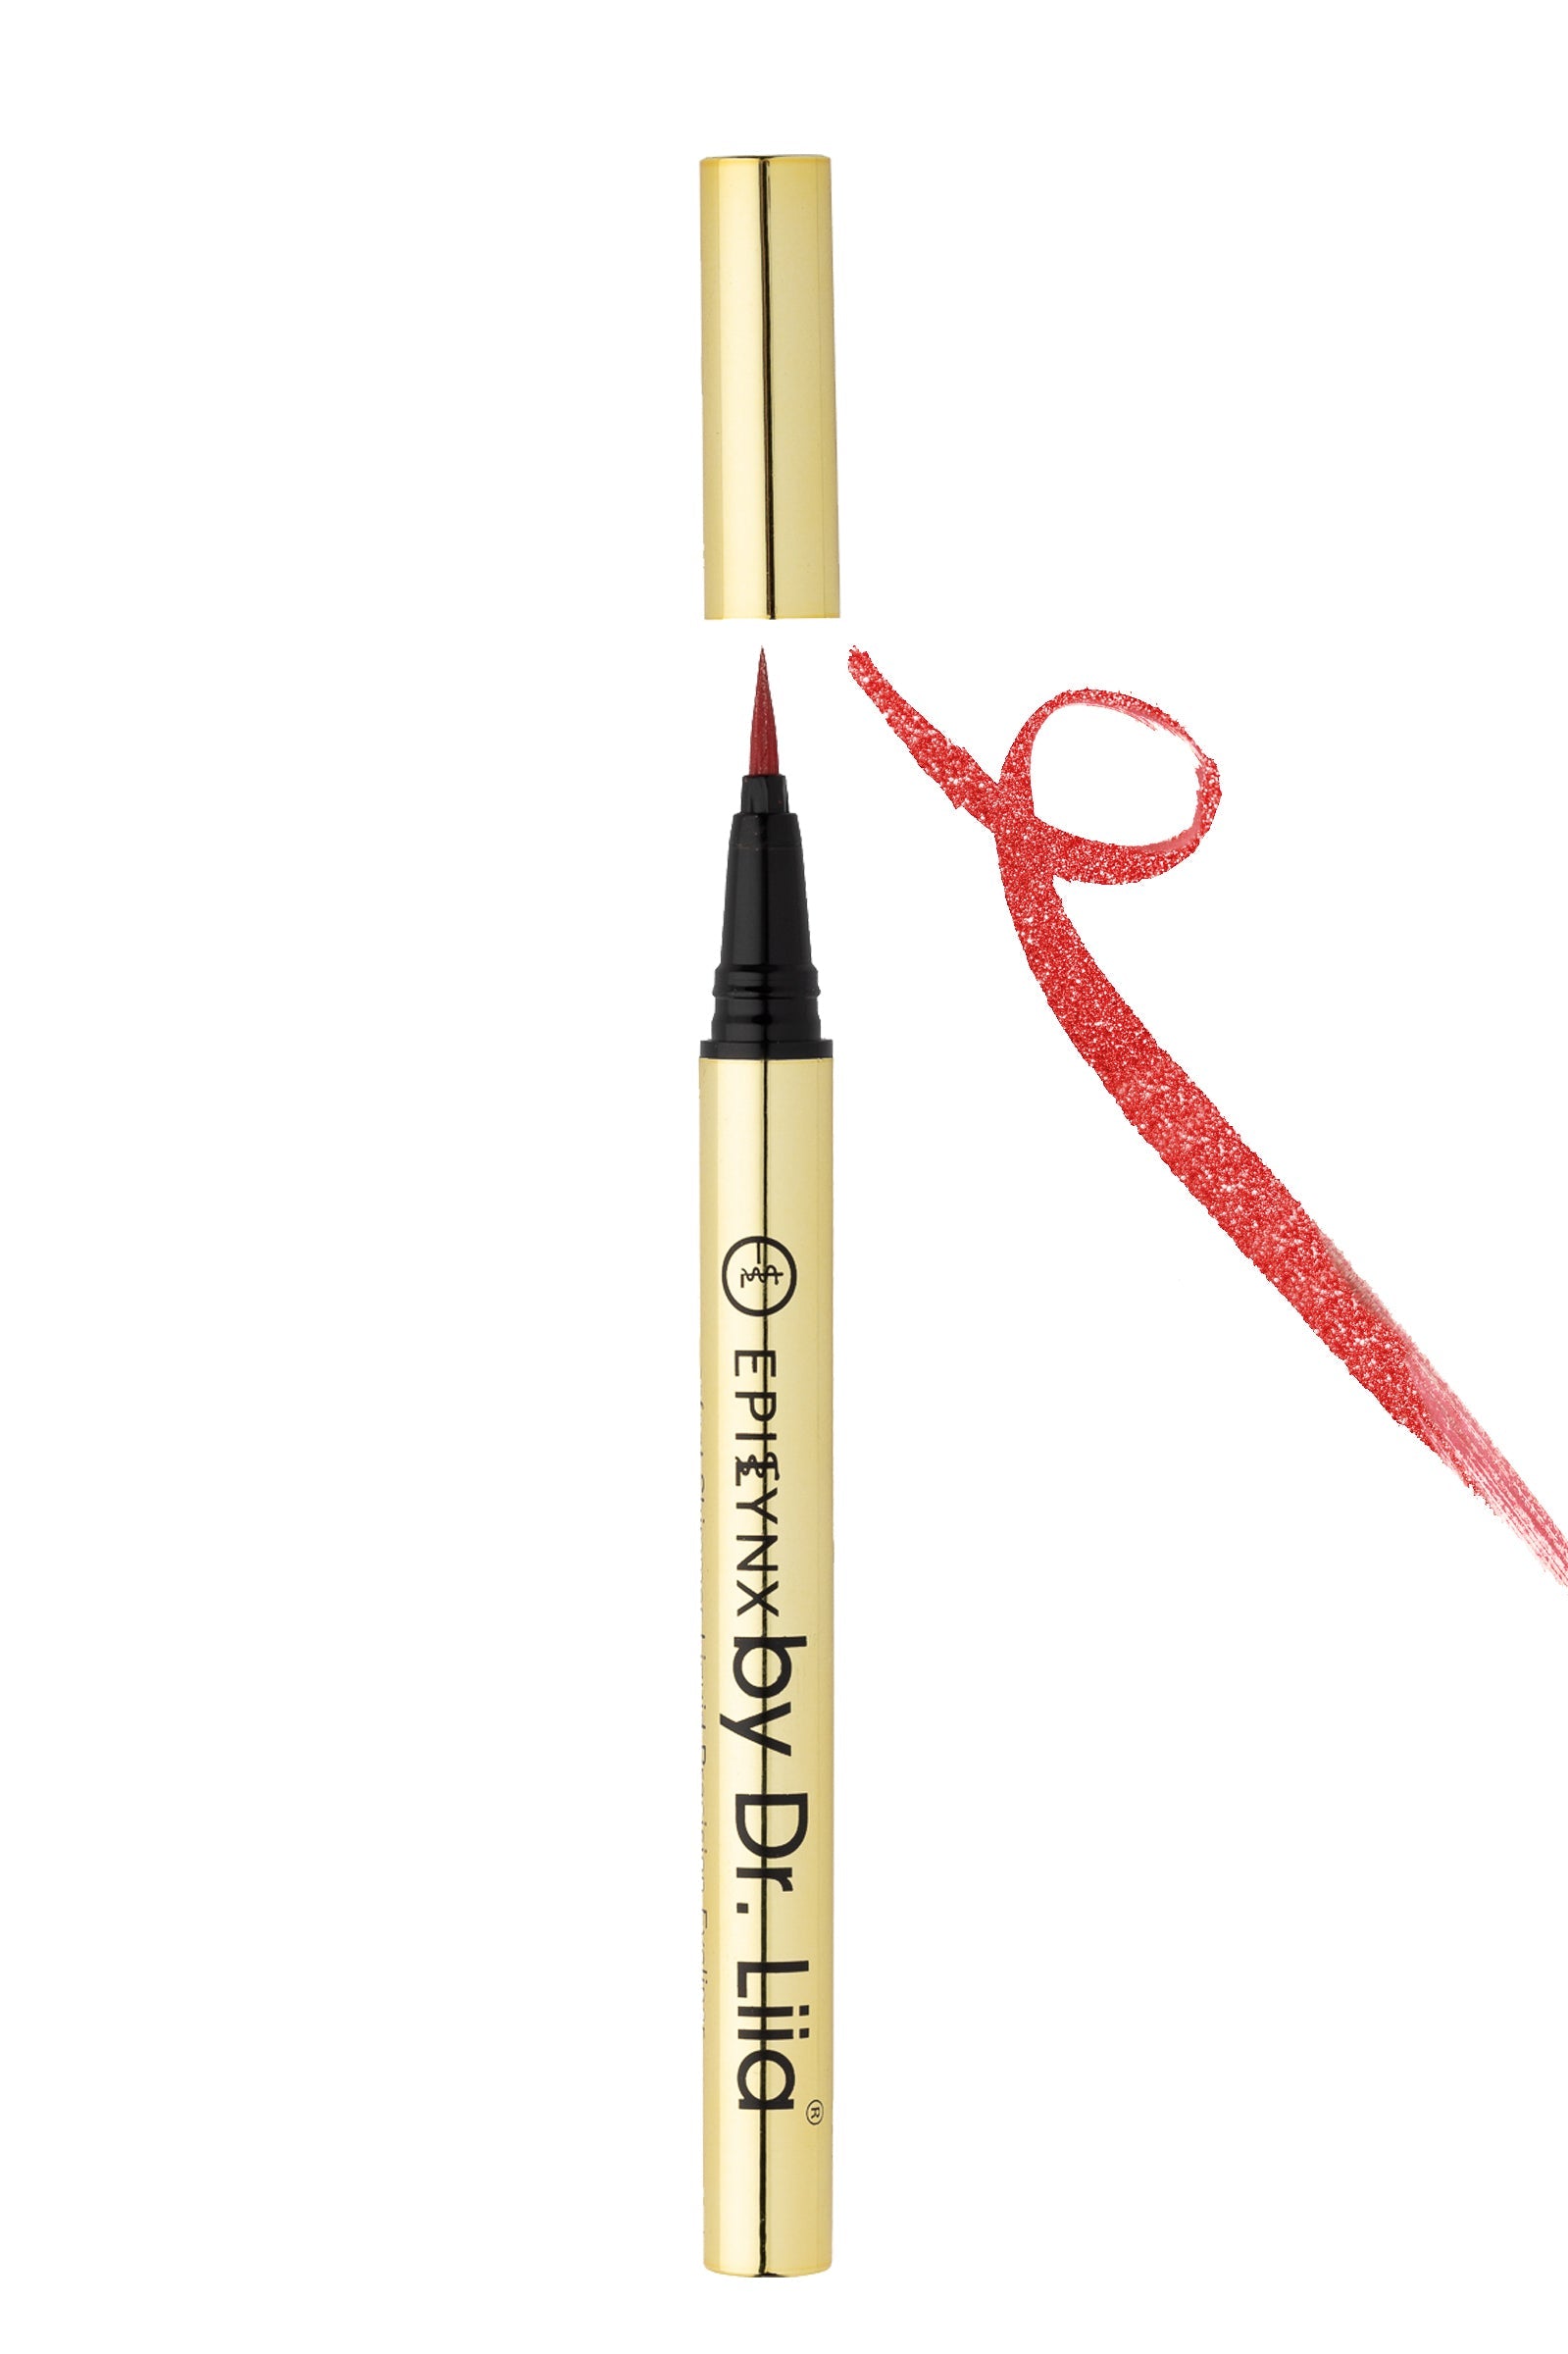 Liquid Eyeliner Pens - Non-Smudge, Waterproof EpiLynx